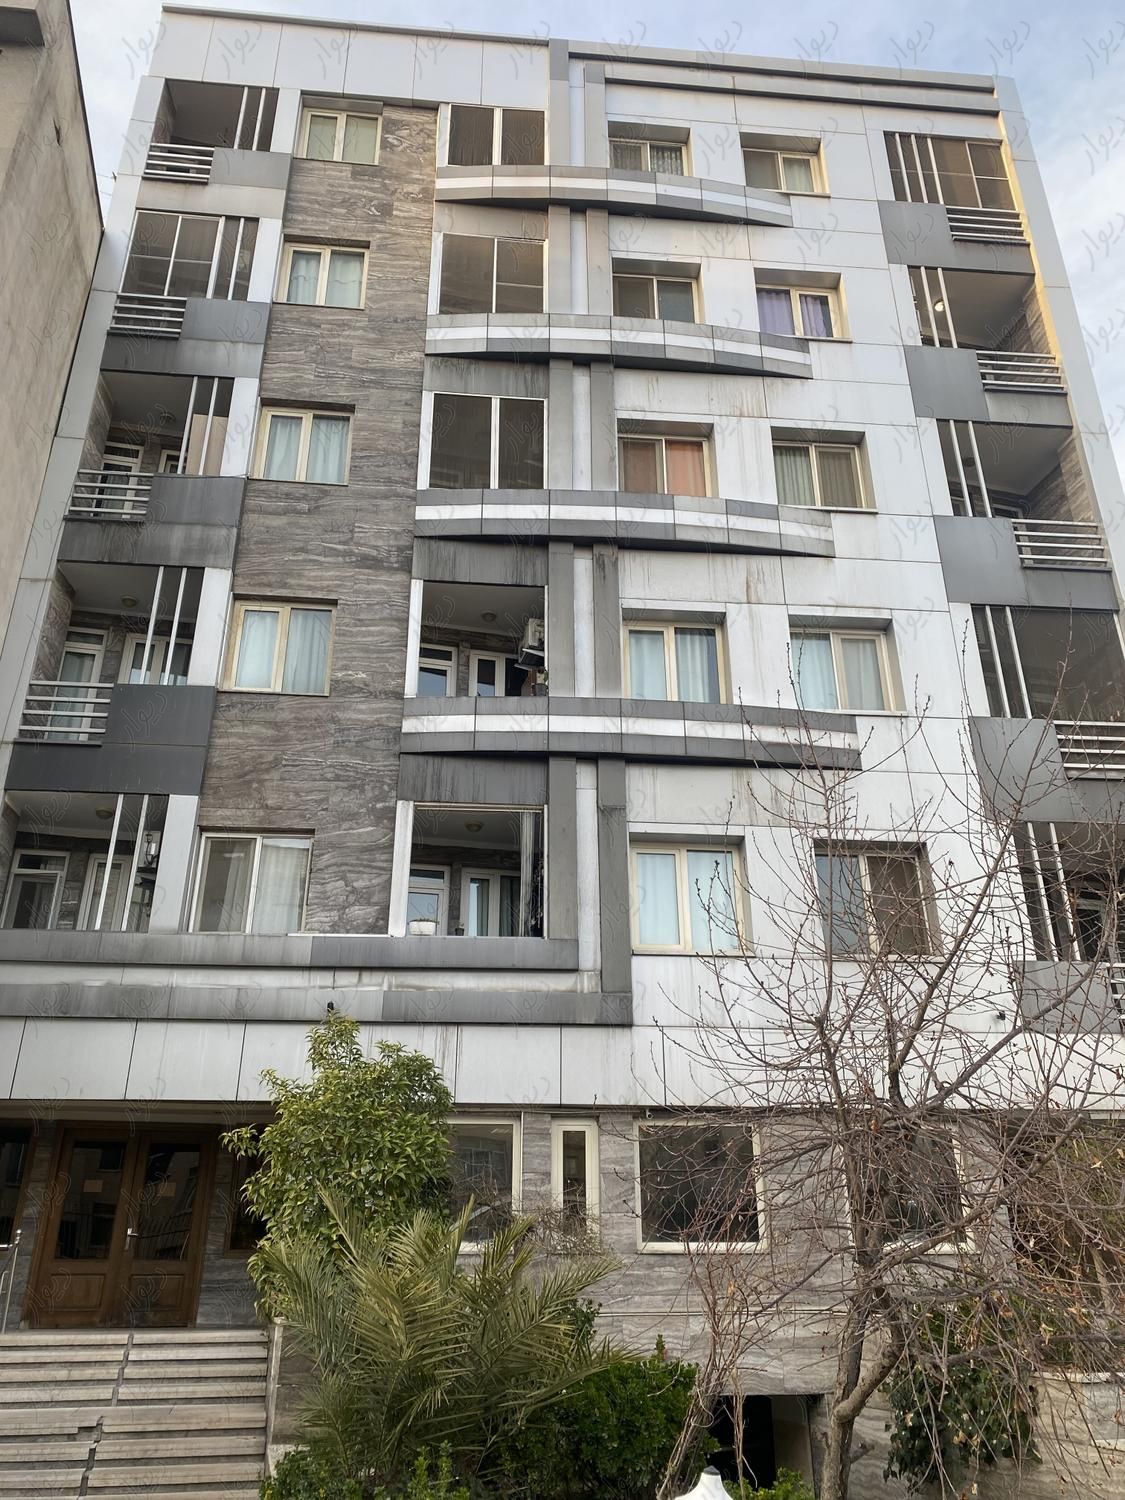 آپارتمان 107 متر فرصت شیرازی|فروش آپارتمان|تهران, نصرت|دیوار